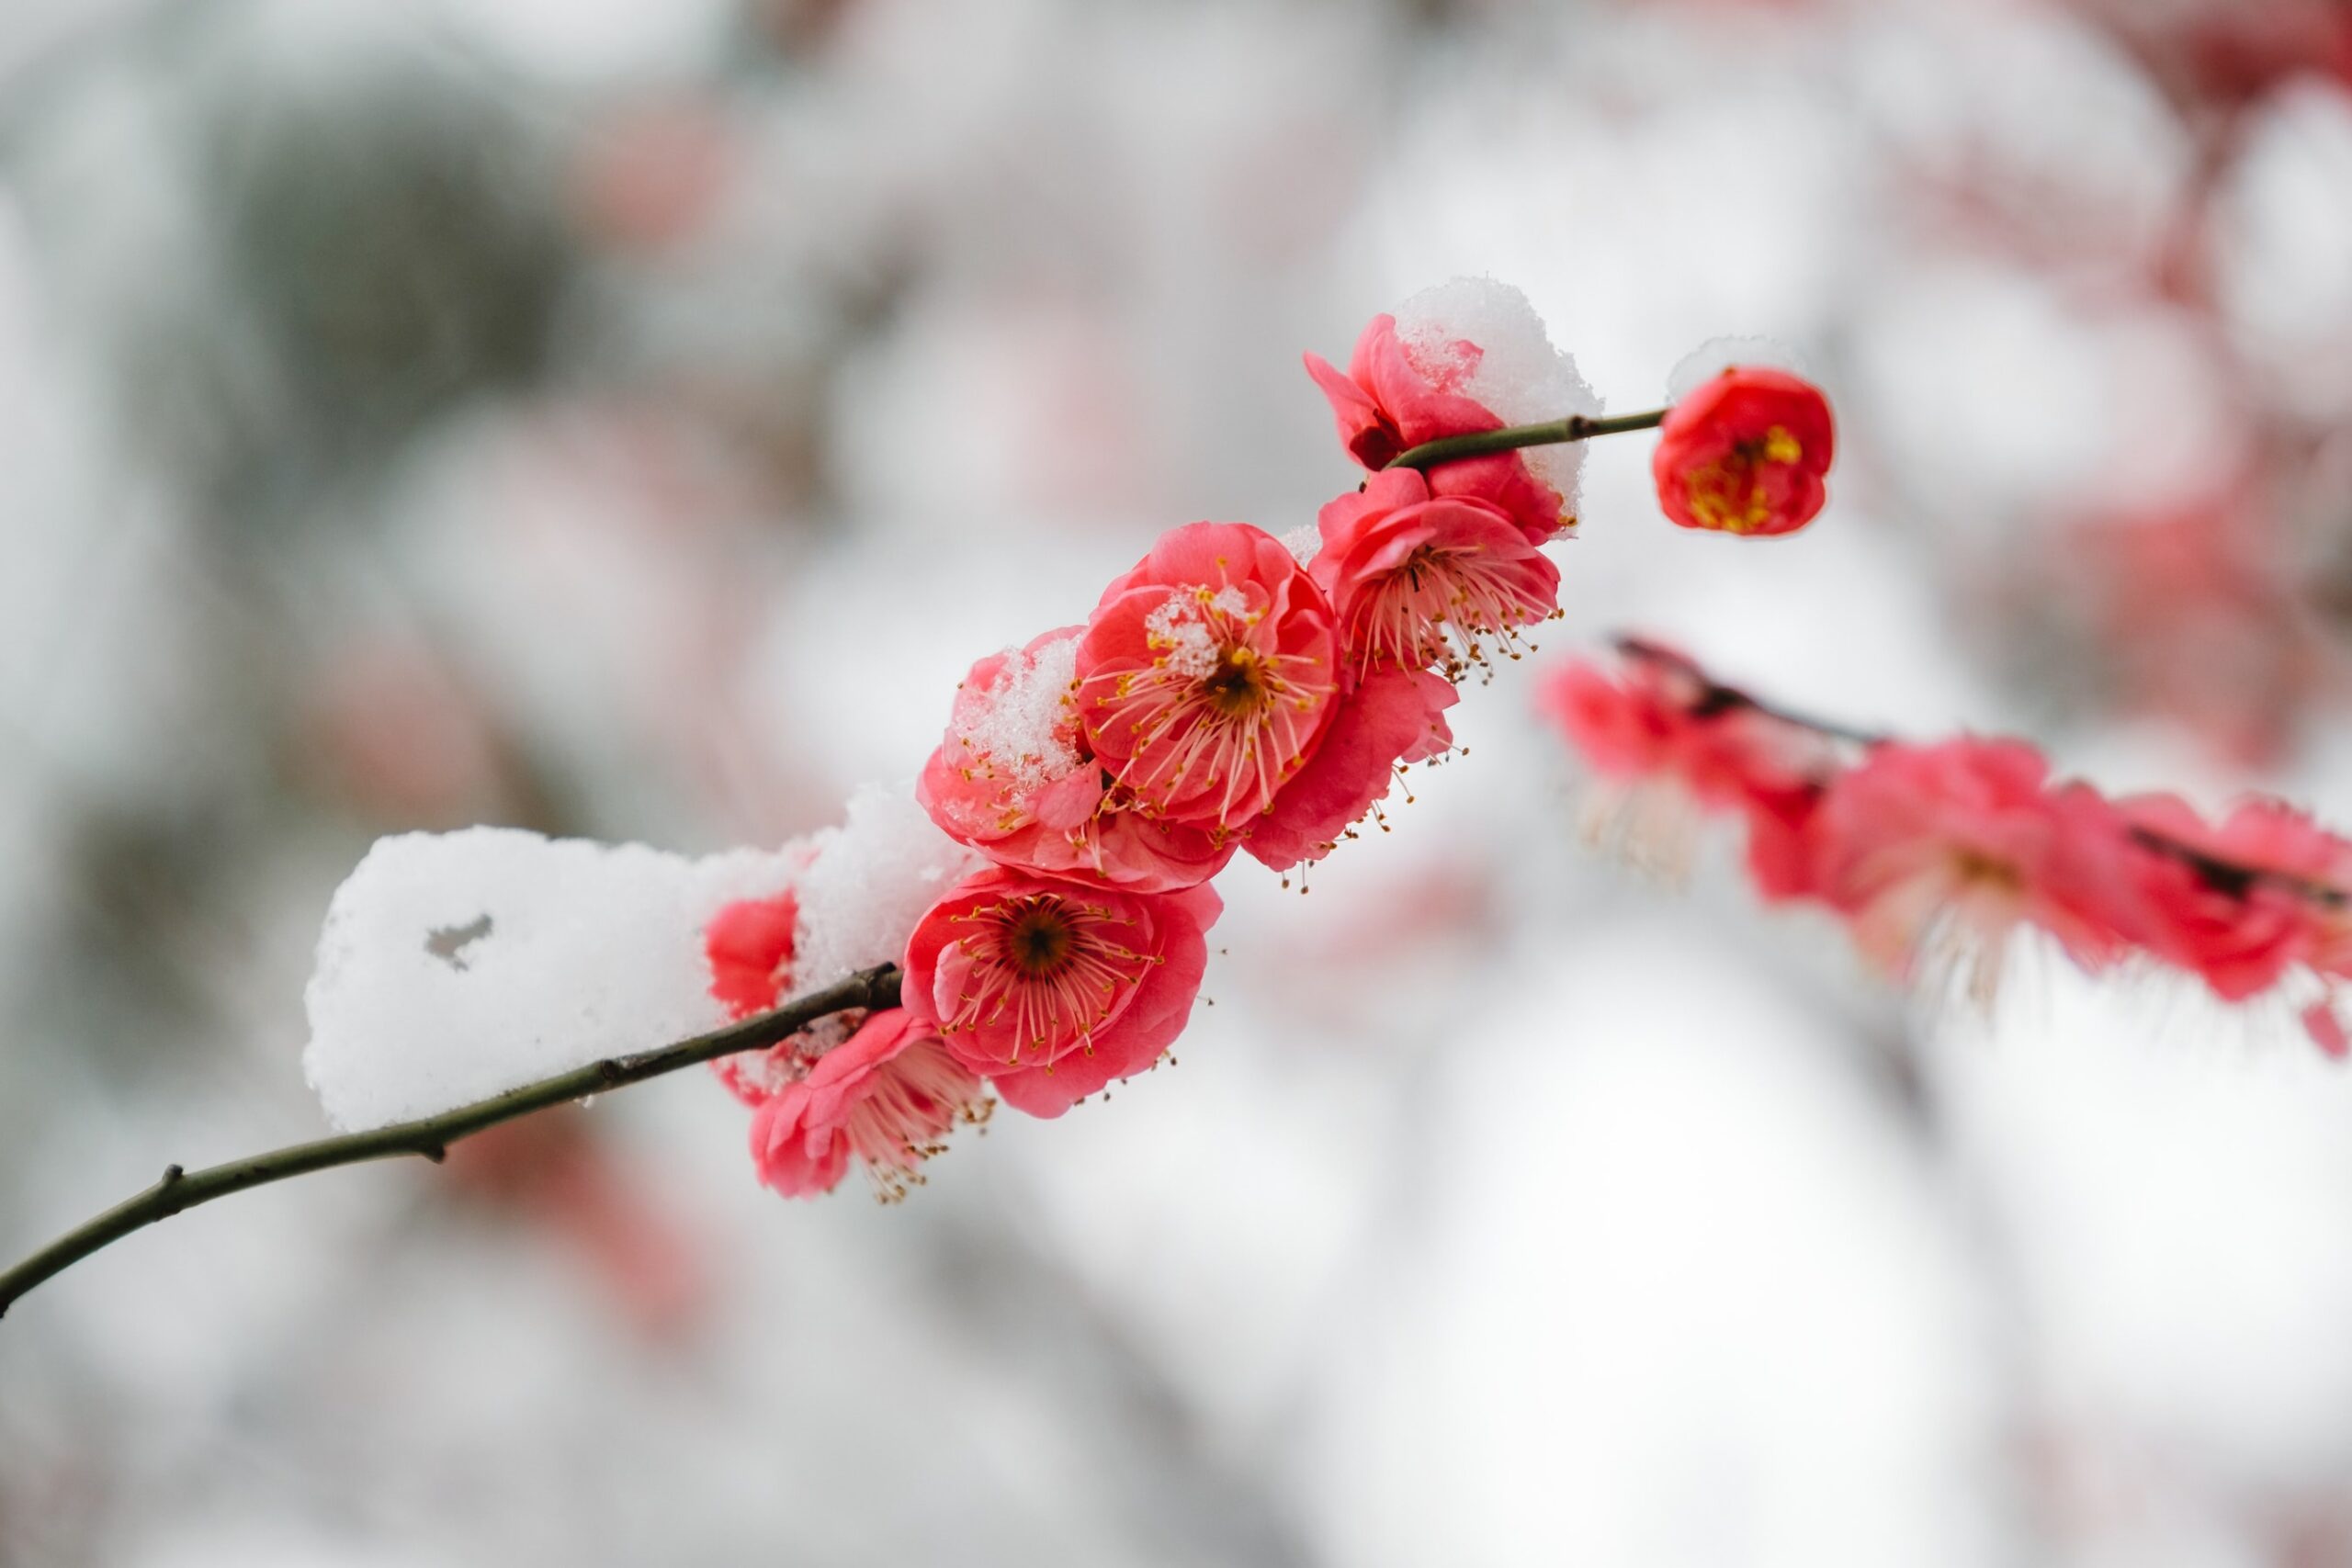 Flower under snow